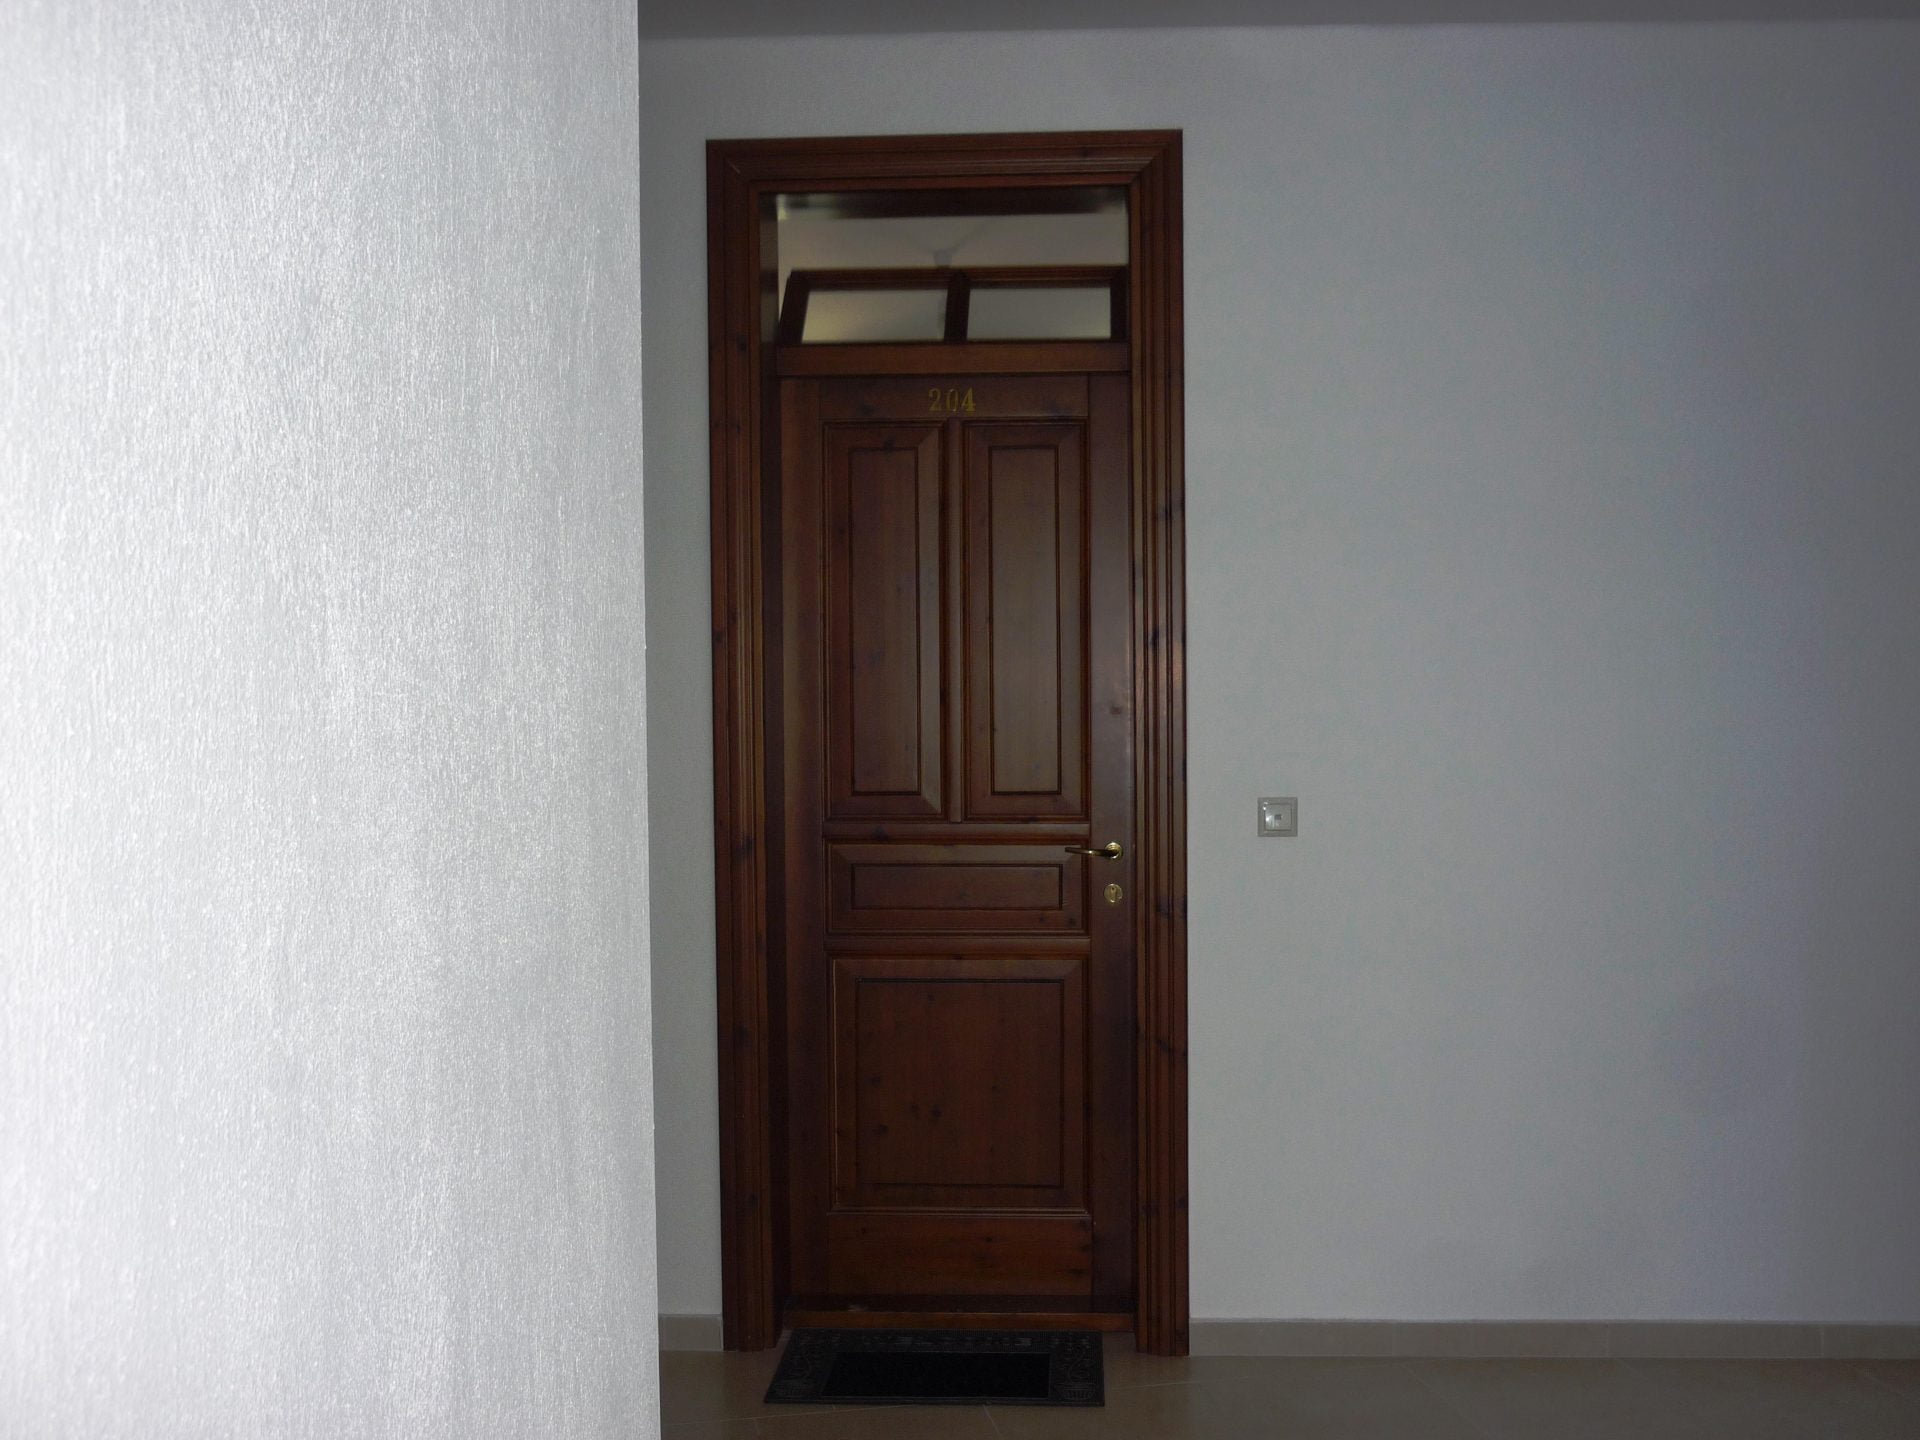 Ταμπλαωτή εσωτερική πόρτα με φεγγίτη